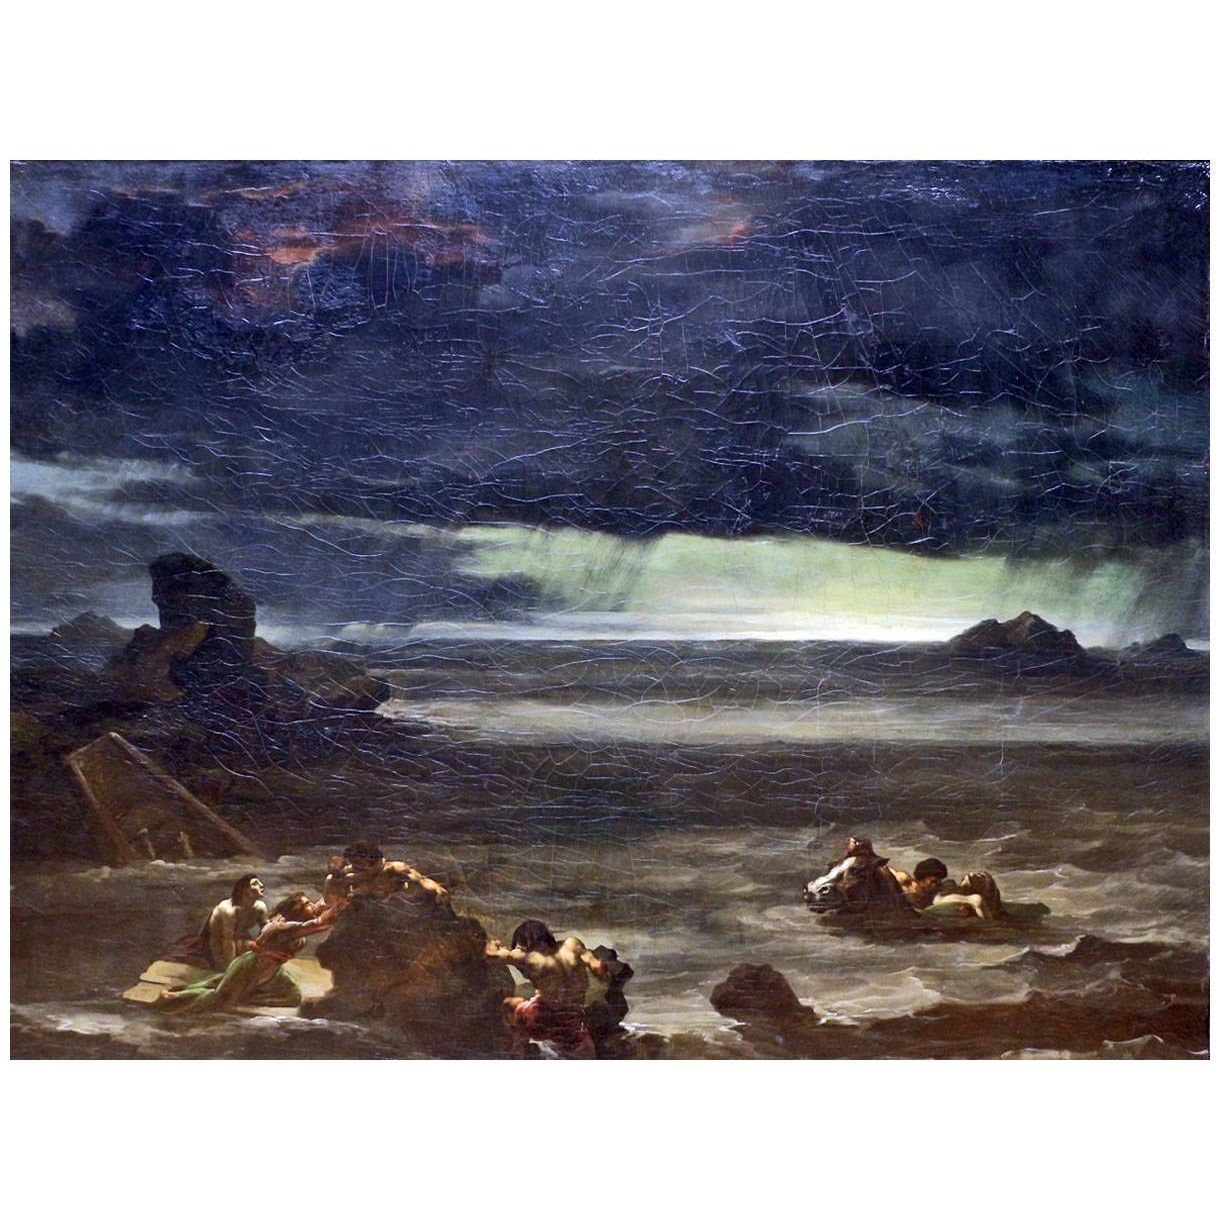 Theodore Gericault. Scène de déluge. 1818. Louvre Paris